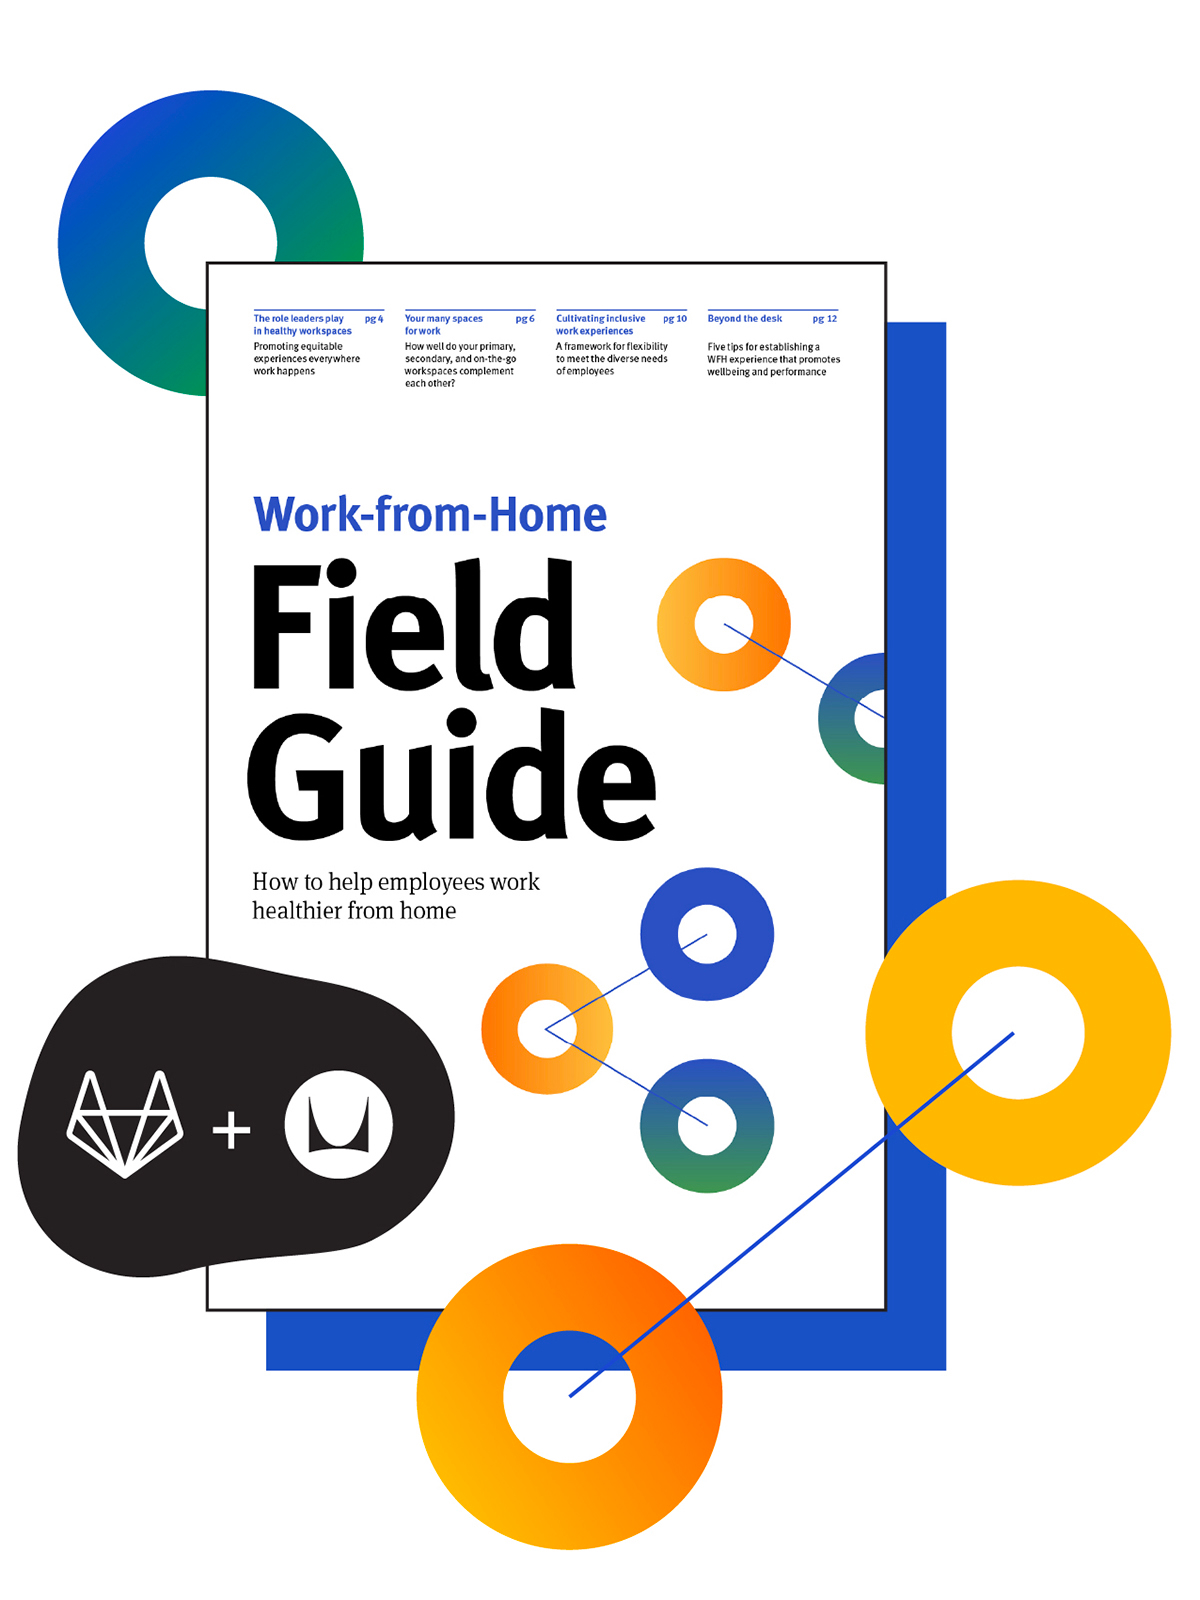 La copertina della Guida sul campo al lavoro da casa, frutto della collaborazione fra gli esperti di telelavoro di GitLab ed Herman Miller.